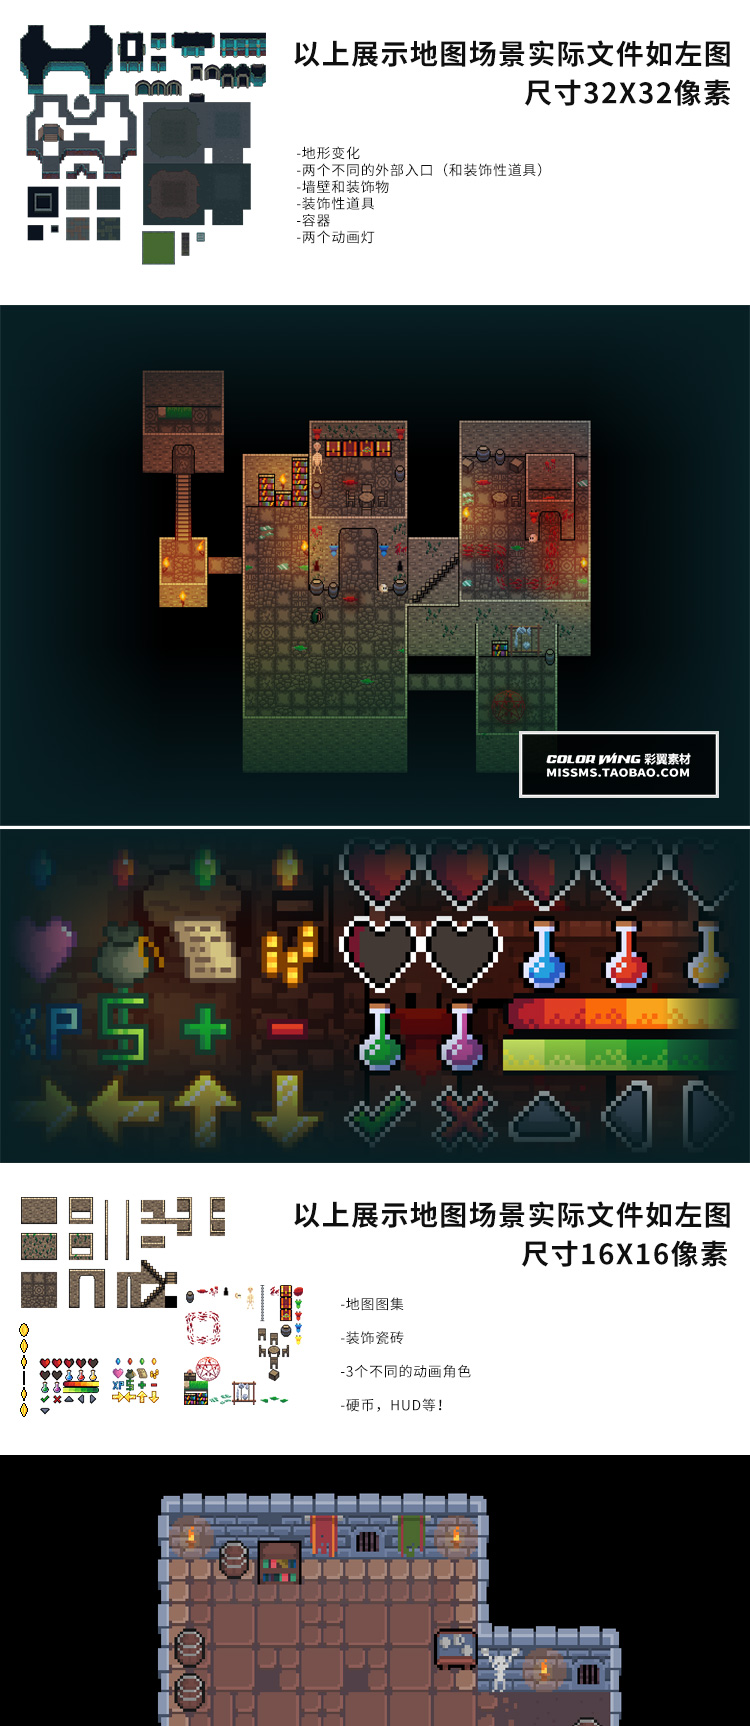 几张RPG类像素游戏地牢场景图块素材-资源包